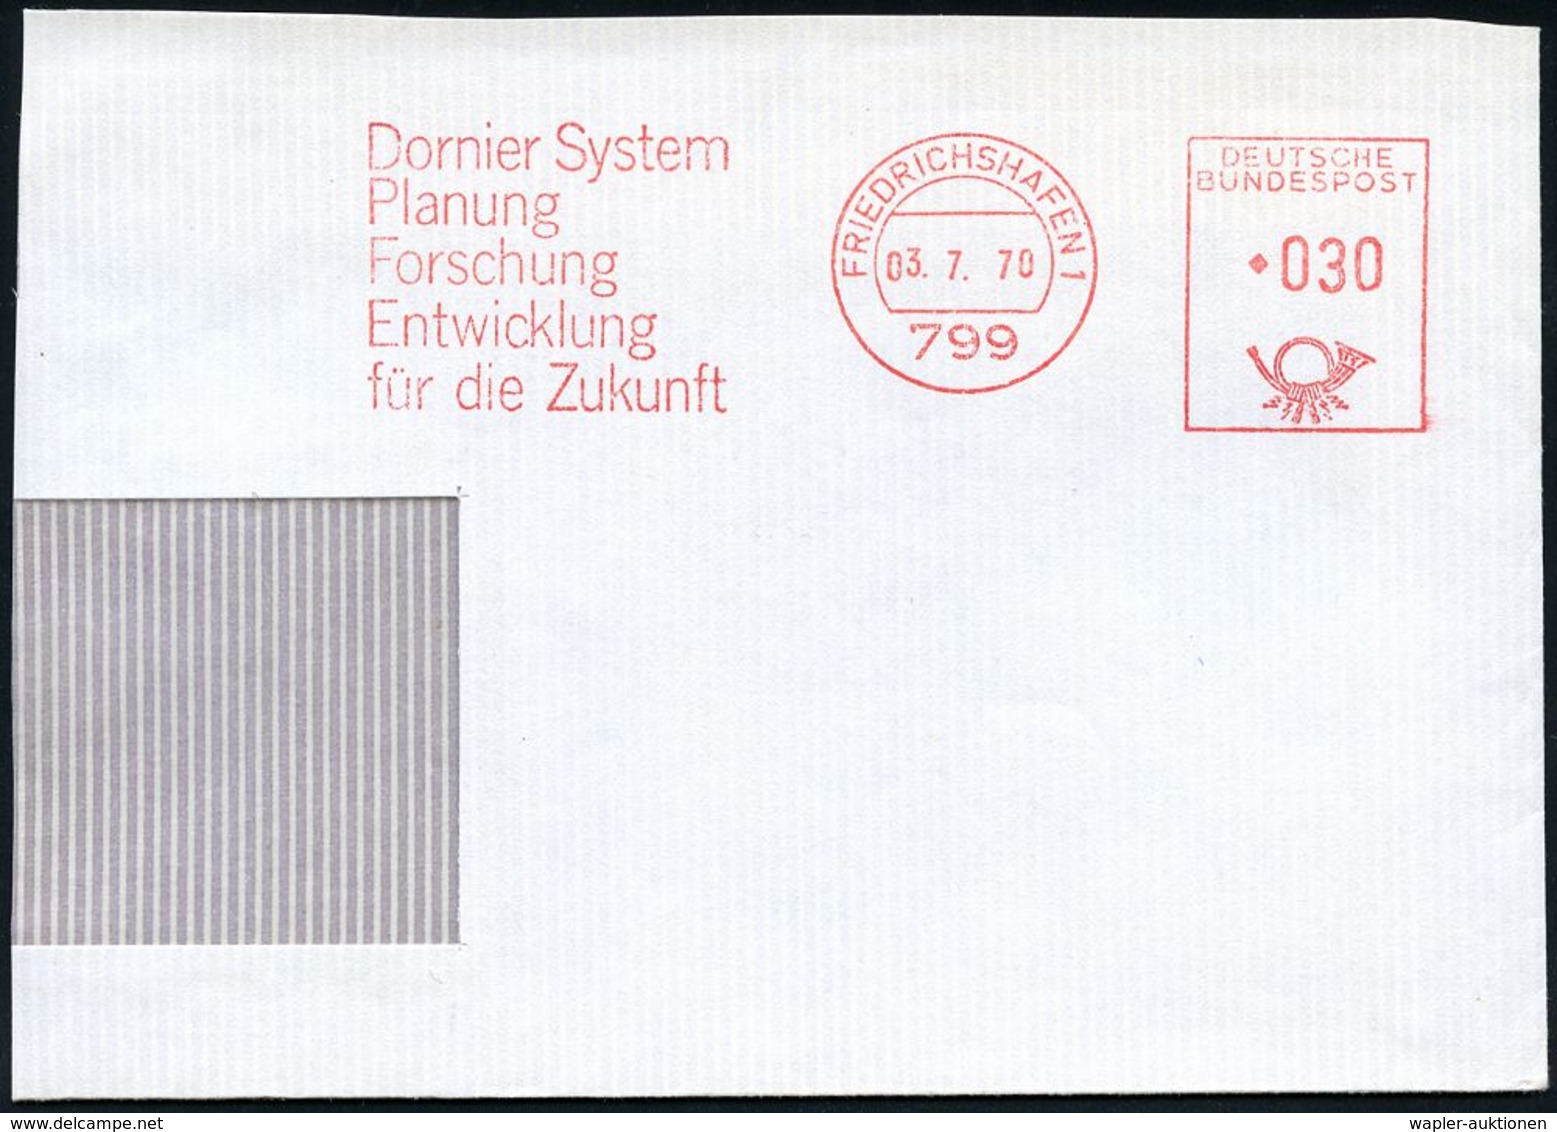 FLUGZEUGINDUSTRIE & -TYPEN : 799 #bzw.# 88045 FRIEDRICHSHAFEN 1/ Dornier System.. #bzw.# Dornier GmbH 1970/95 2 Verschie - Vliegtuigen